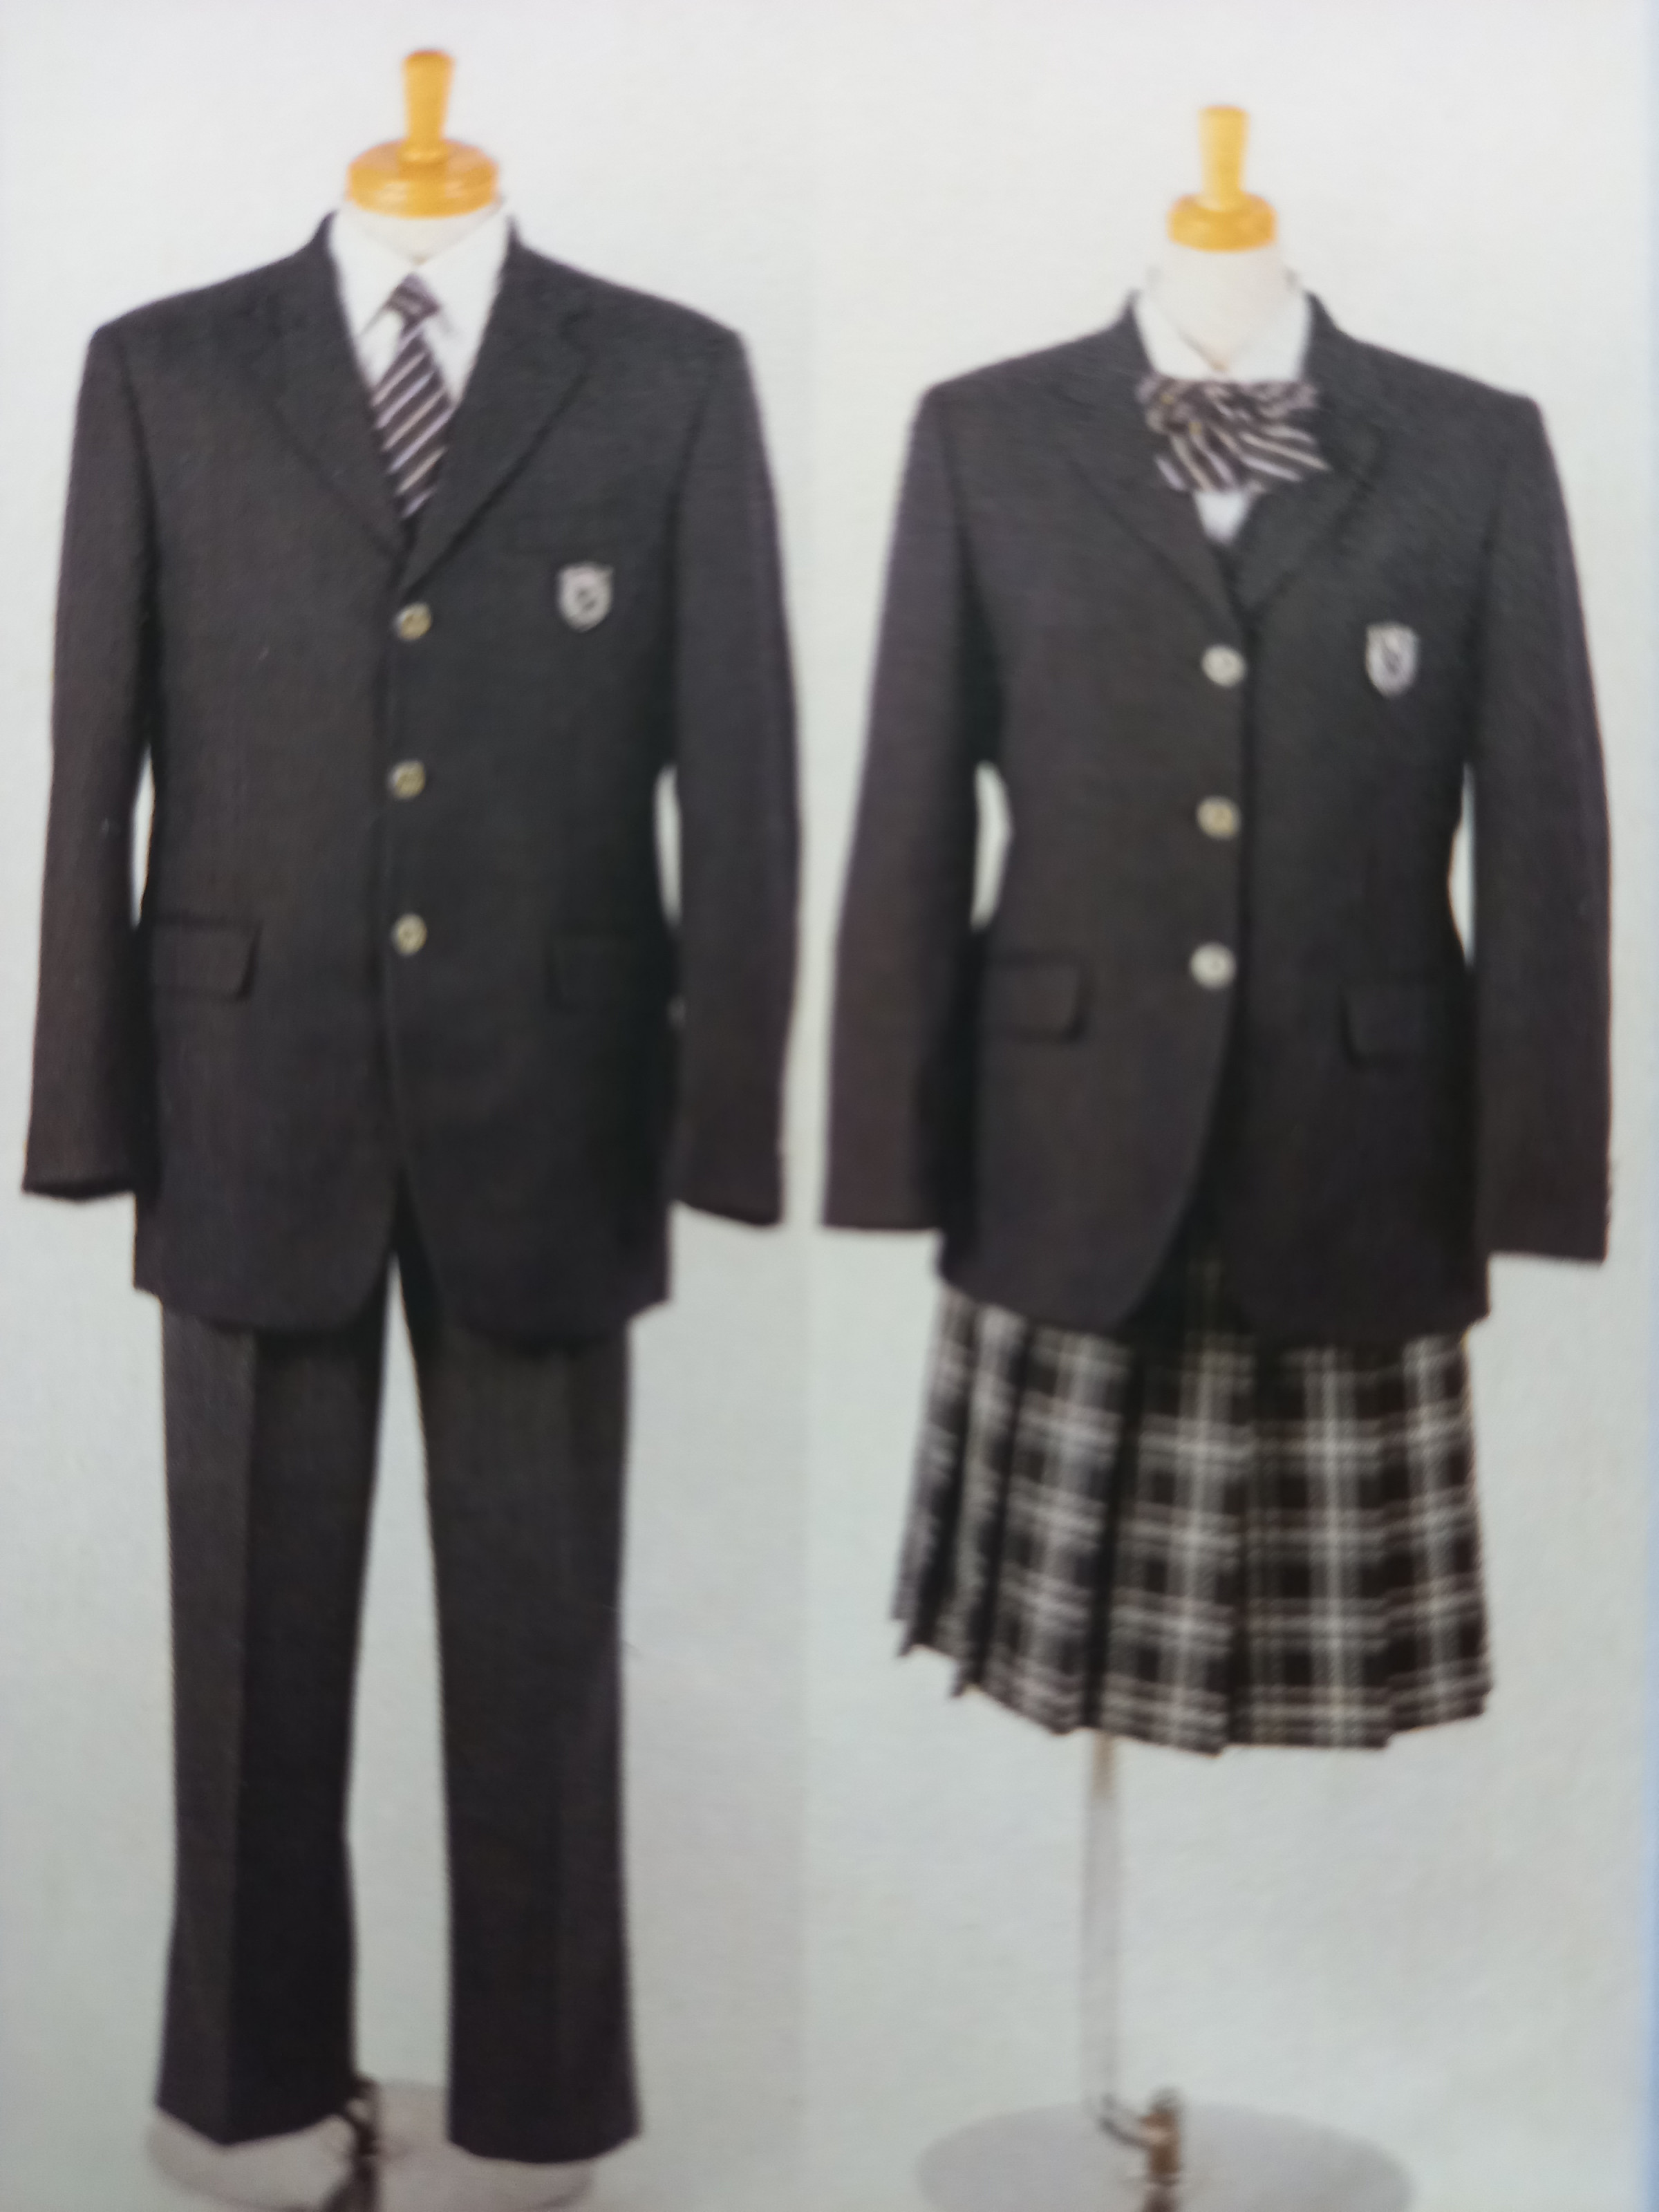 滑川総合高校制服です